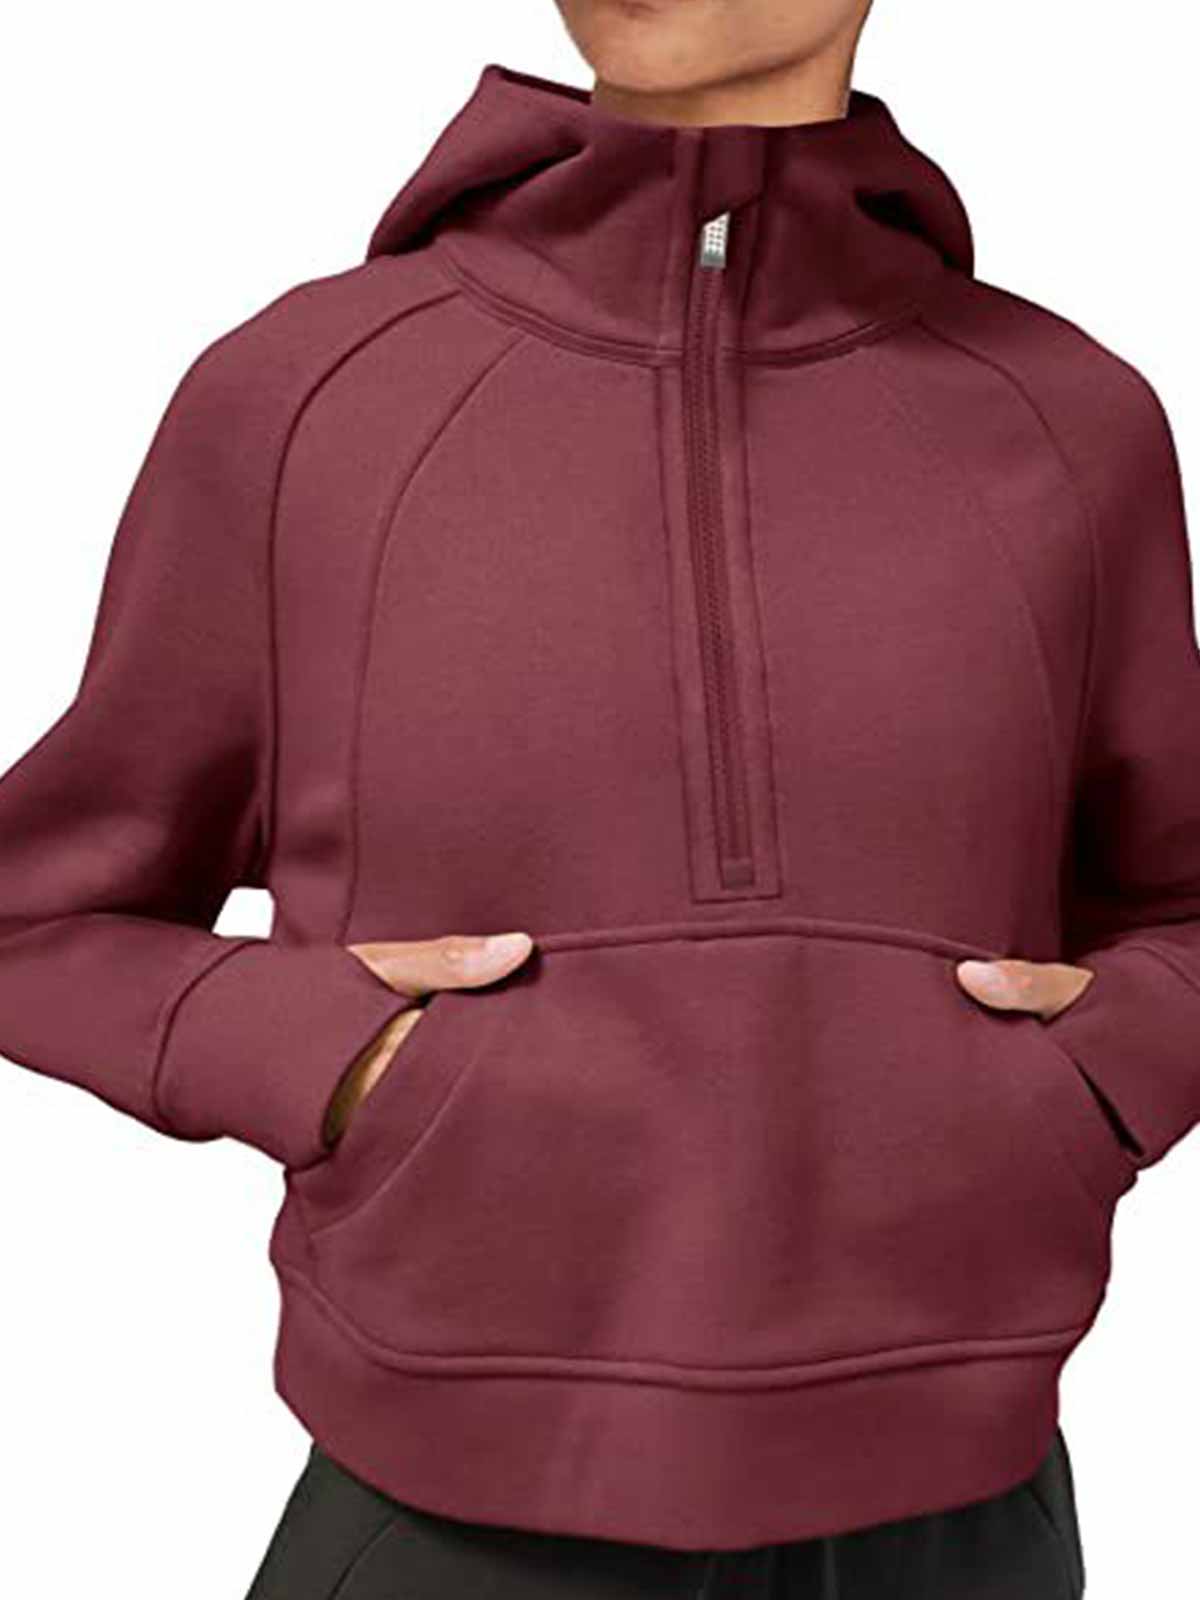 1/2 Zipper Sweatshirts with Kangaroo Pocket